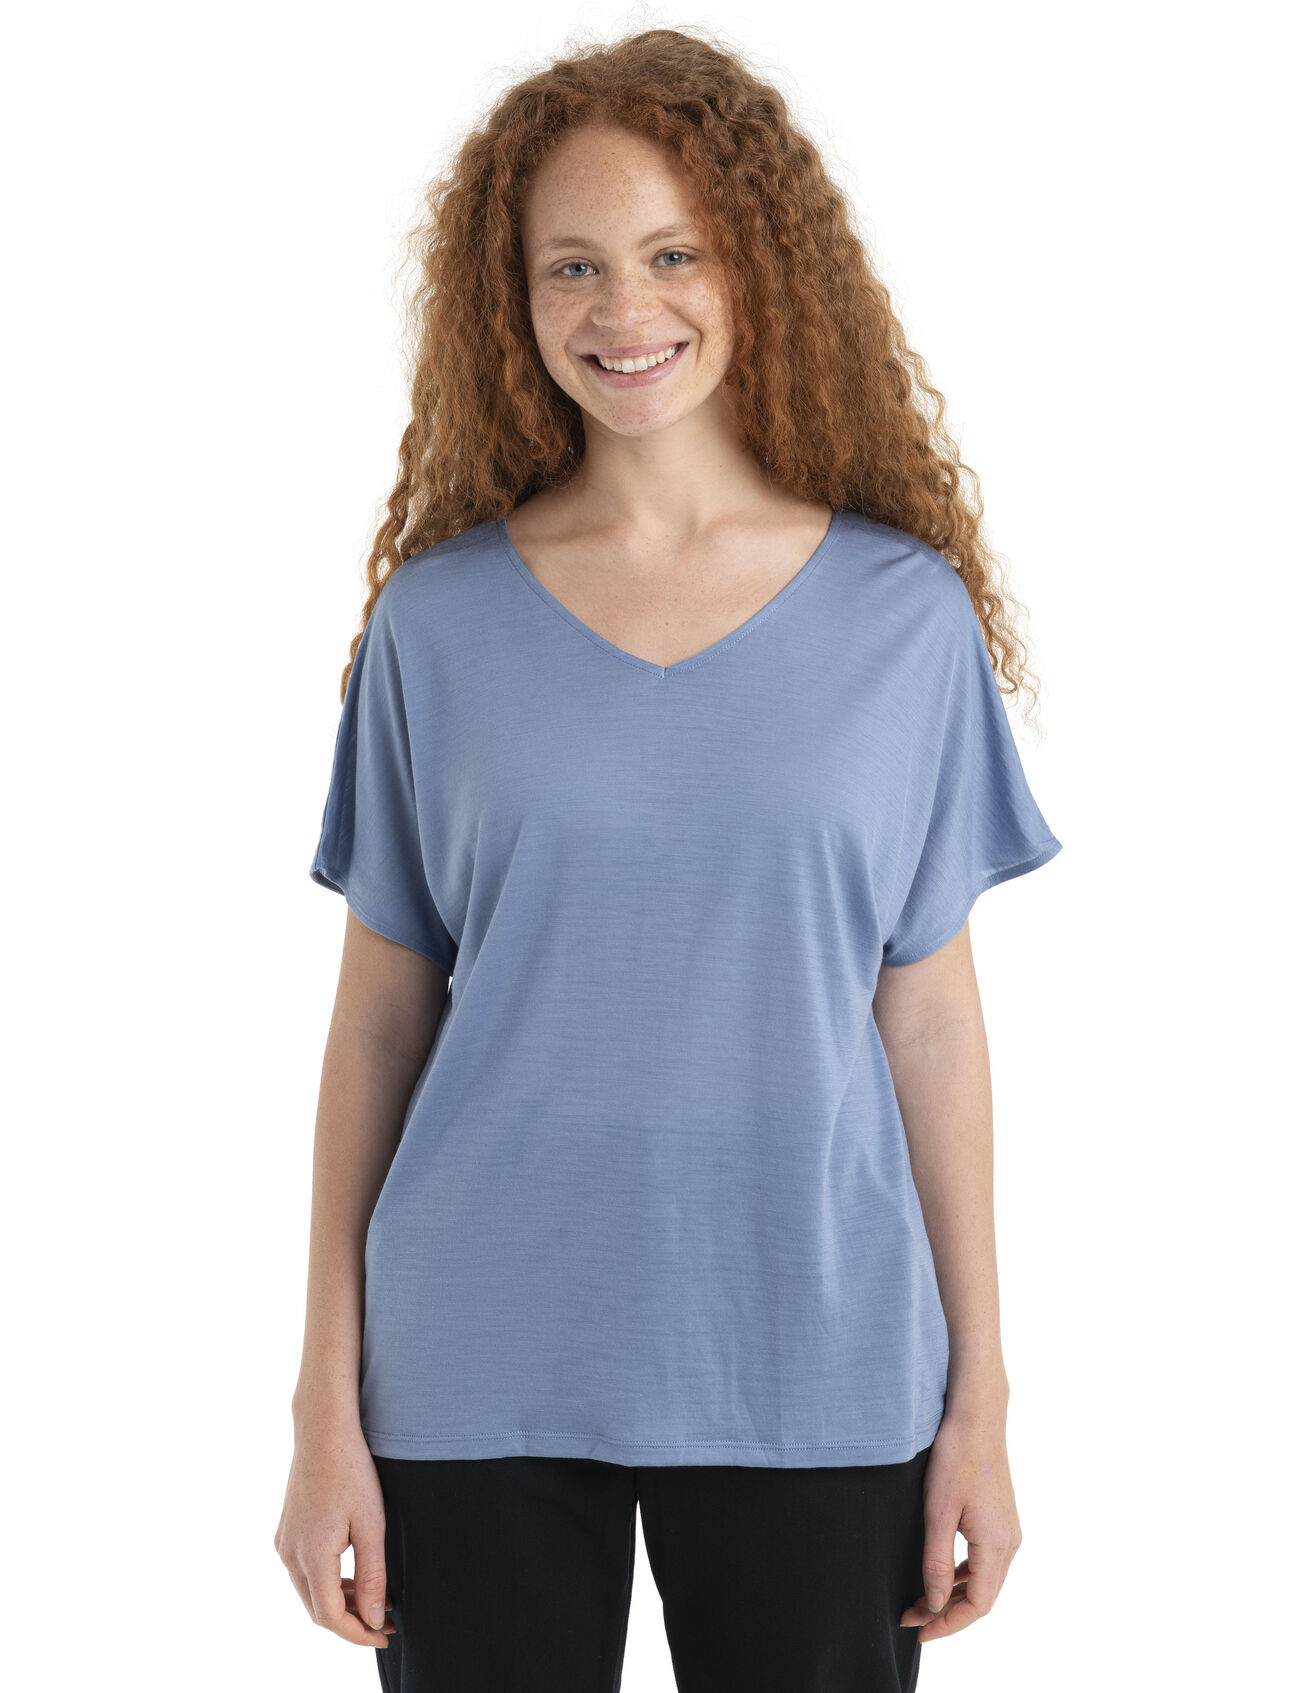 Wendbares Merino Drayden T-Shirt Damen Ein äußerst vielseitiges T-Shirt für jeden Tag aus unserem Cool-Lite™ Jersey, das wendbare Drayden T-Shirt kann als softes V-Shirt oder umgekehrt als hohes Rundhals-Shirt getragen werden.